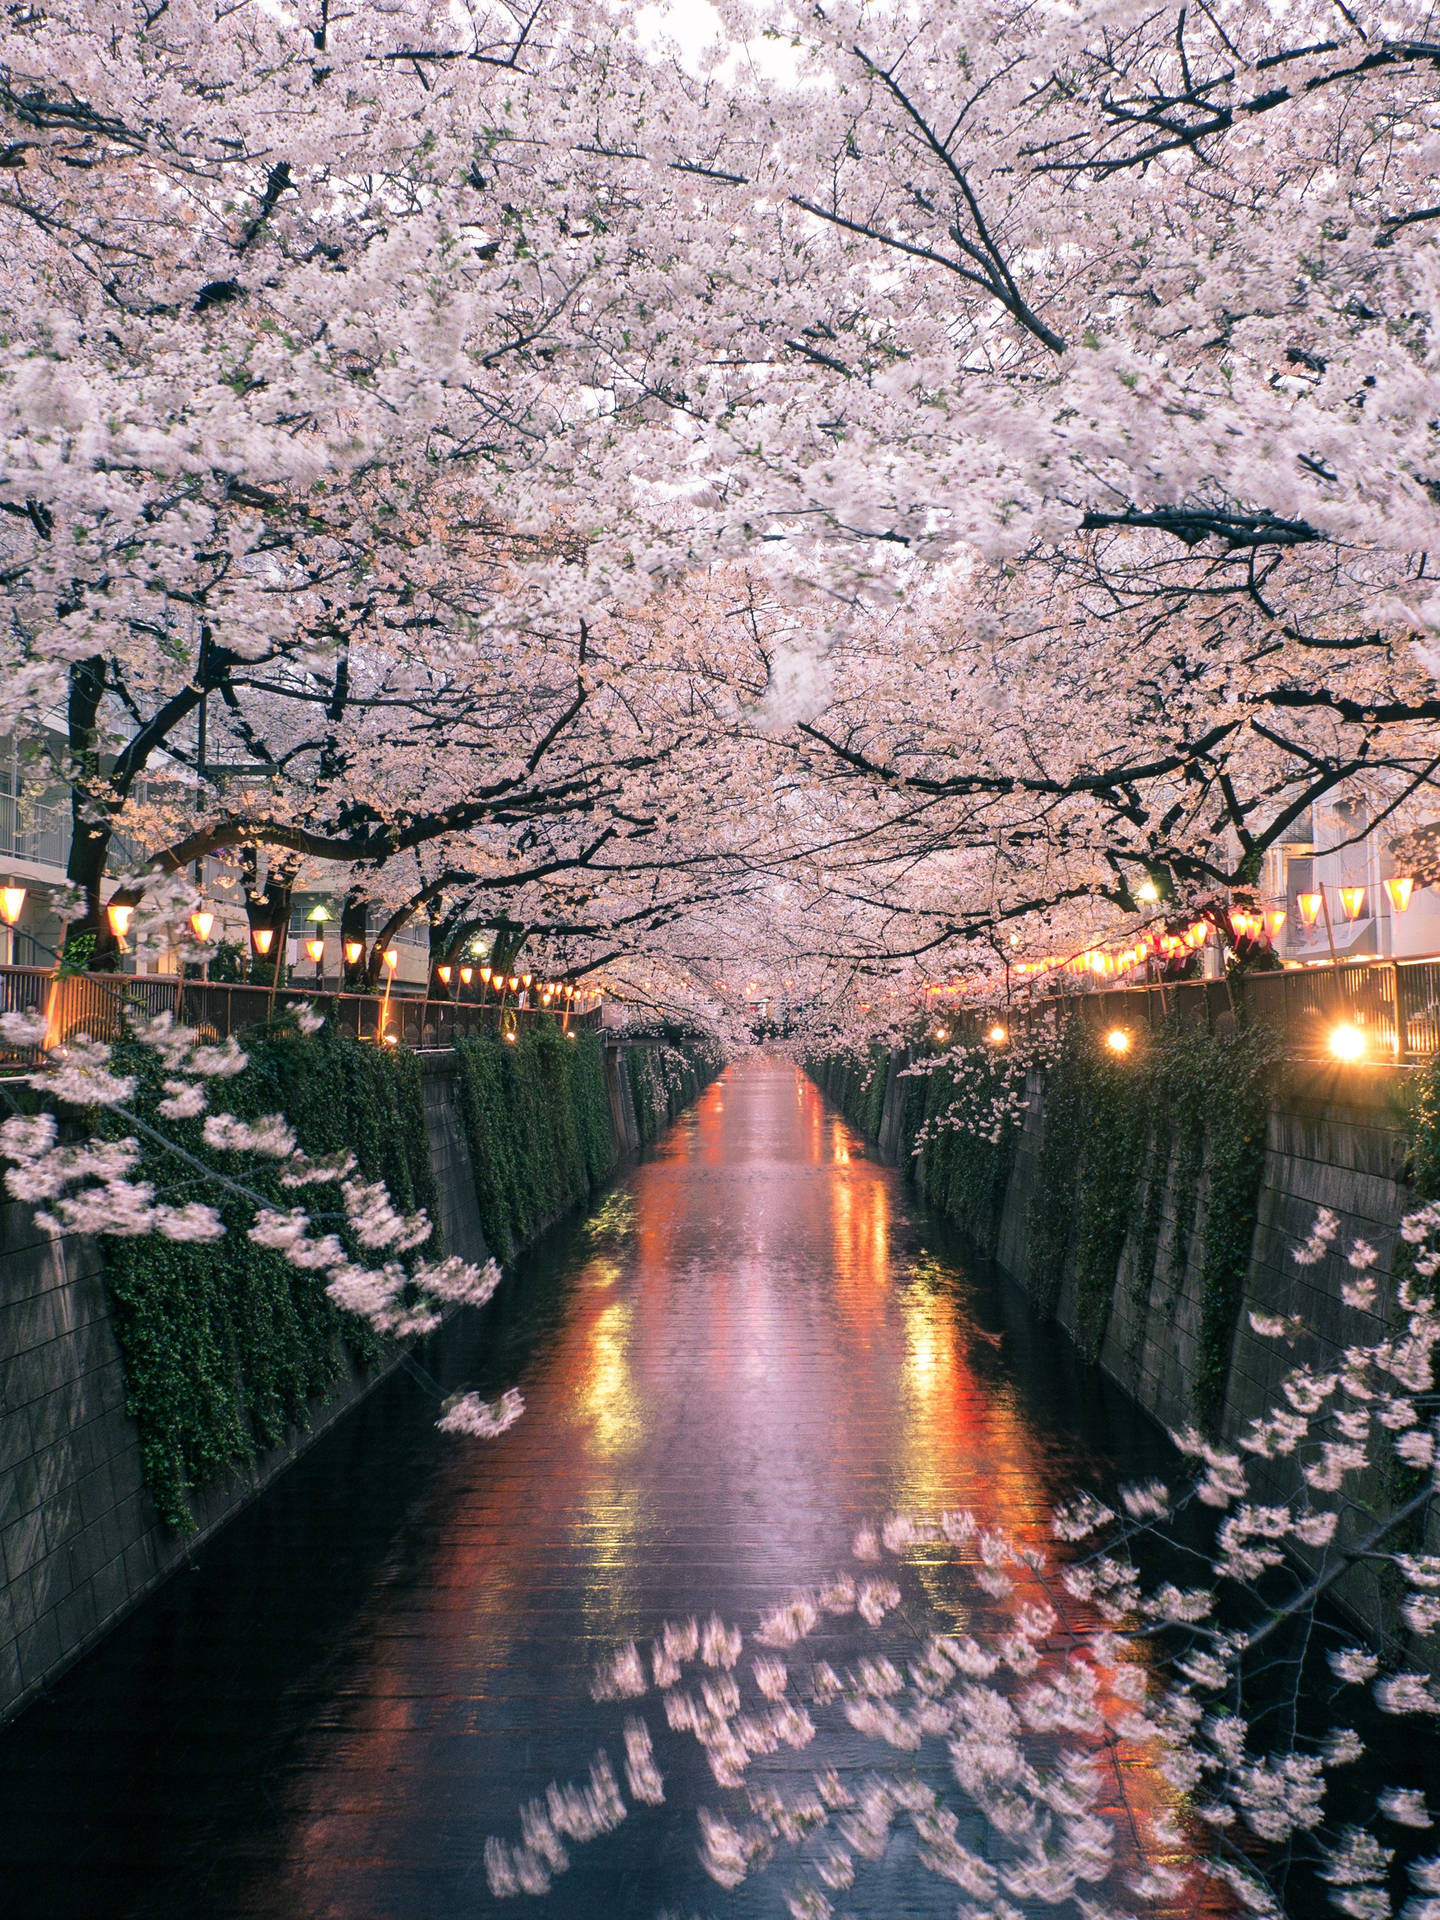 Nydskønheden Af Japanske Kirsebærblomster På Din Computer Eller Mobiltelefon. Wallpaper